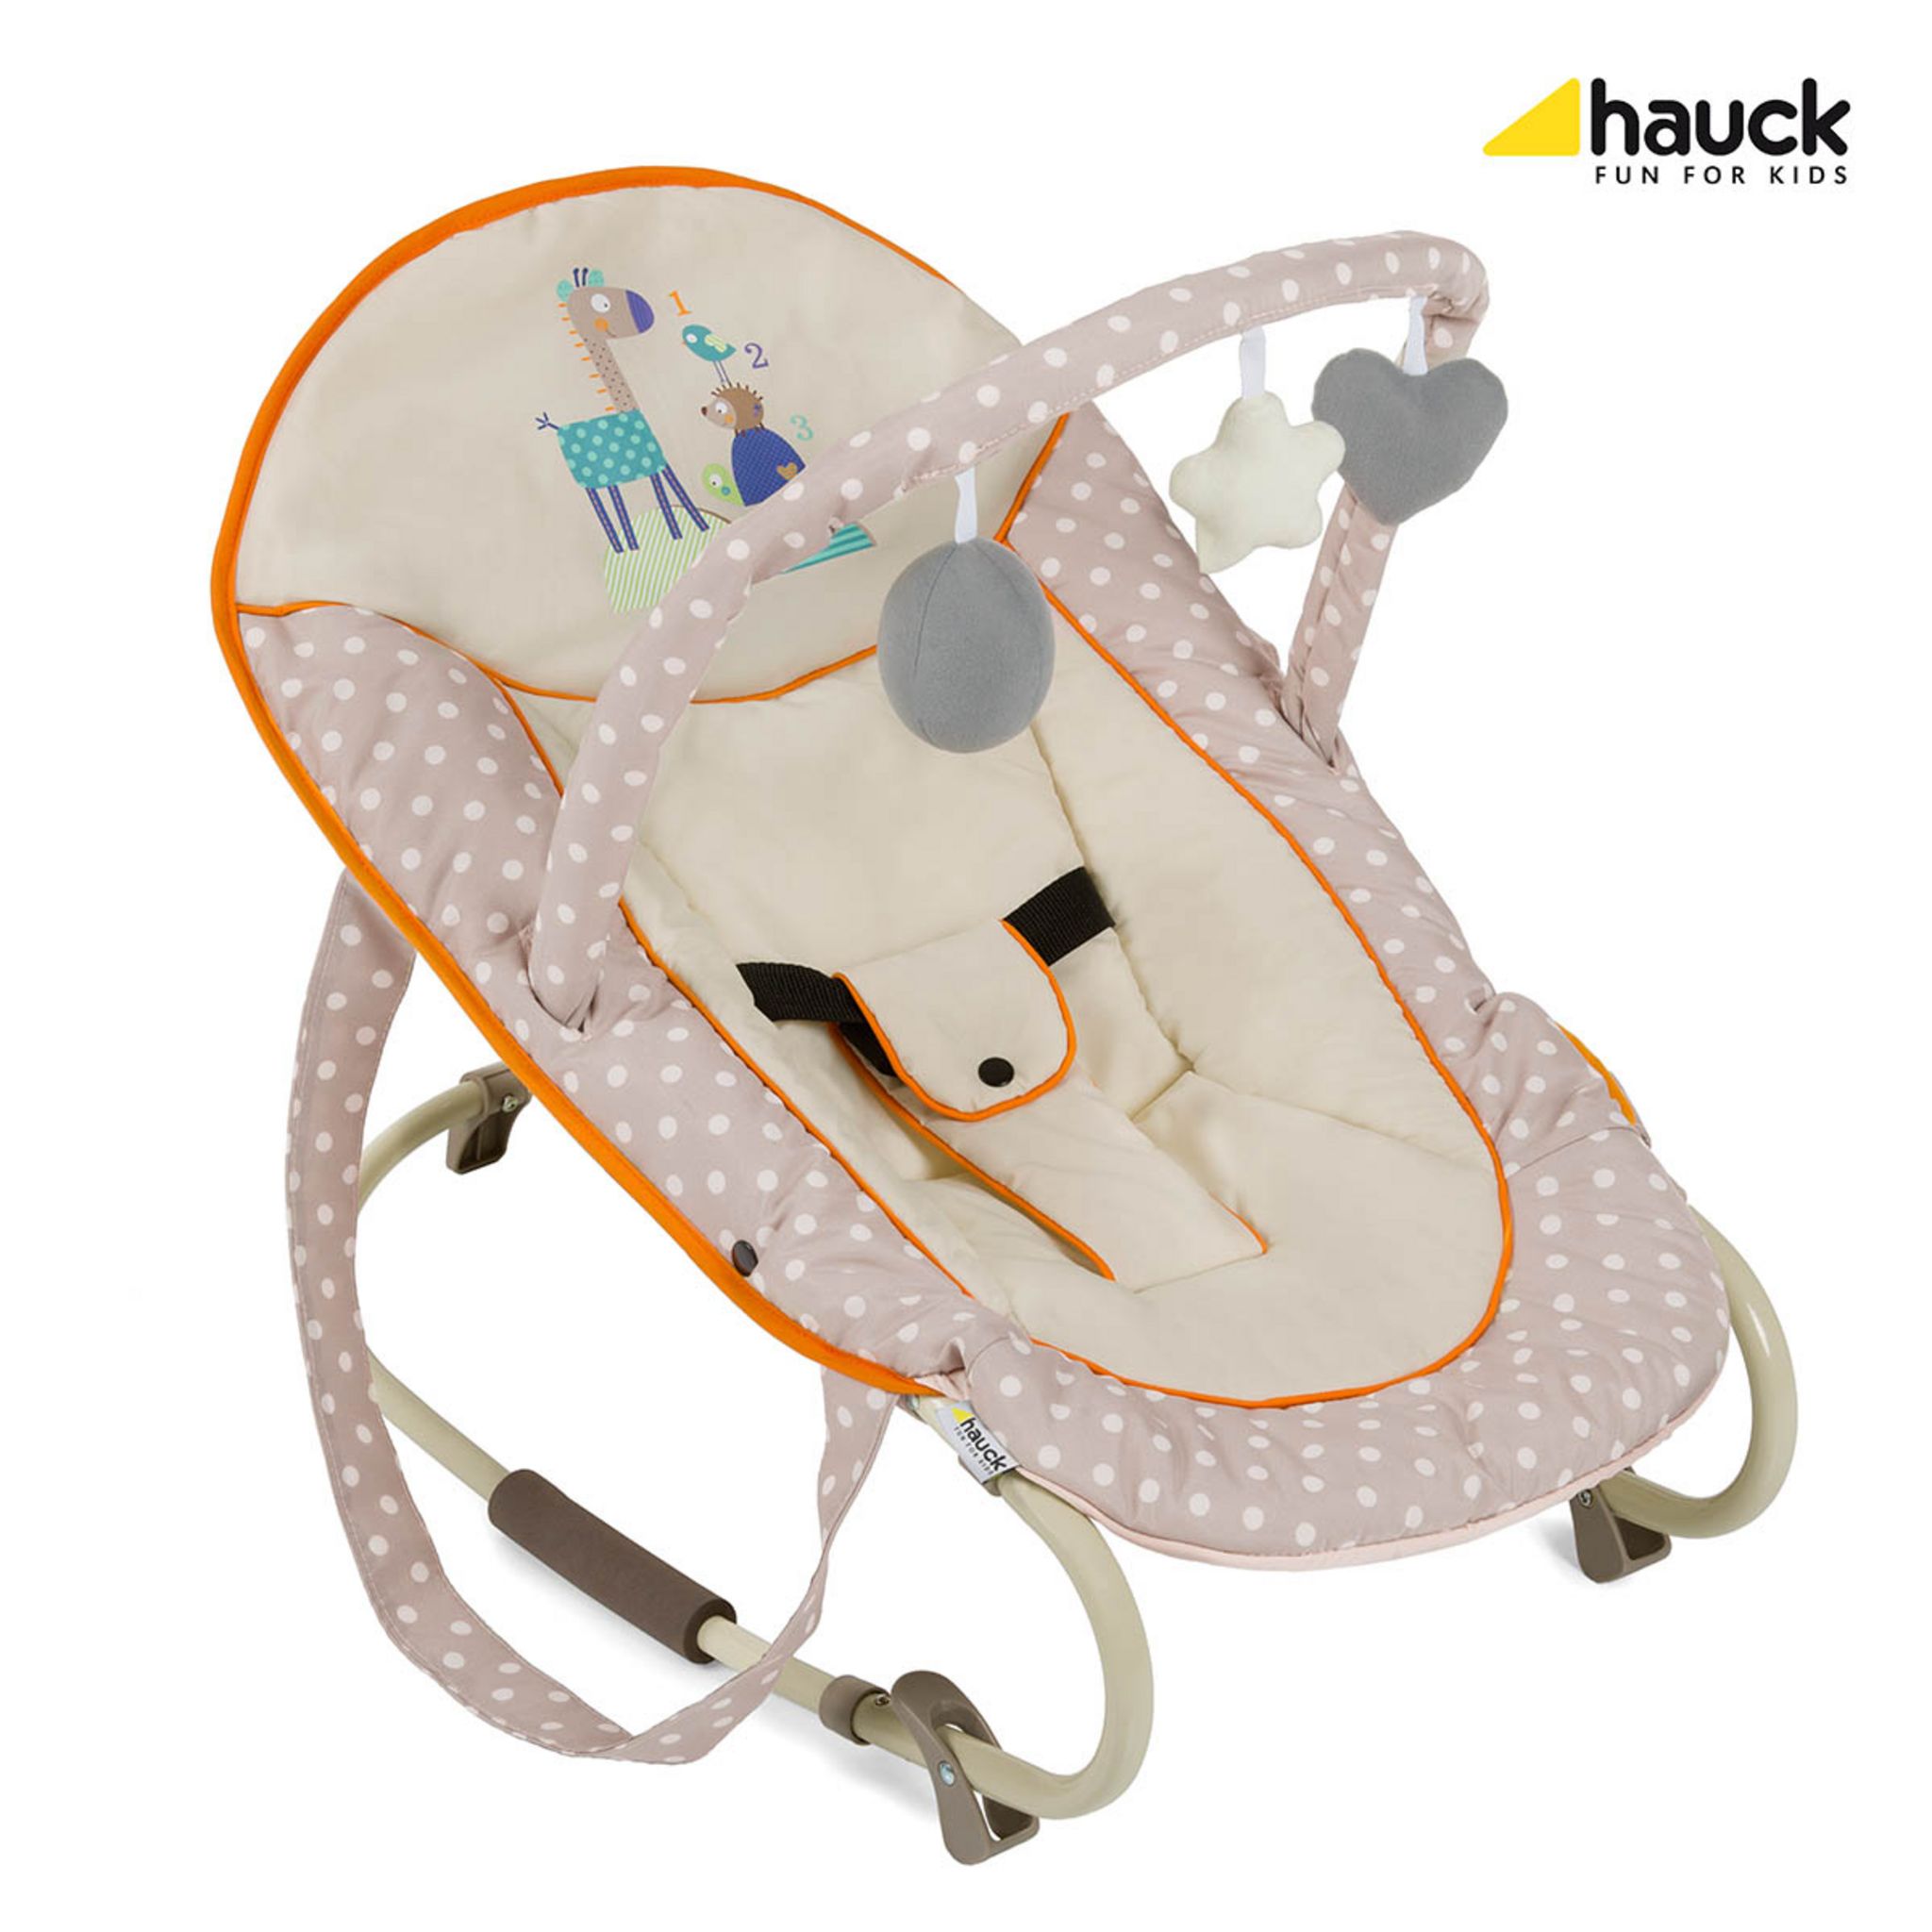 HAUCK Transat bébé inclinable Bungee leisure - Beige pas cher